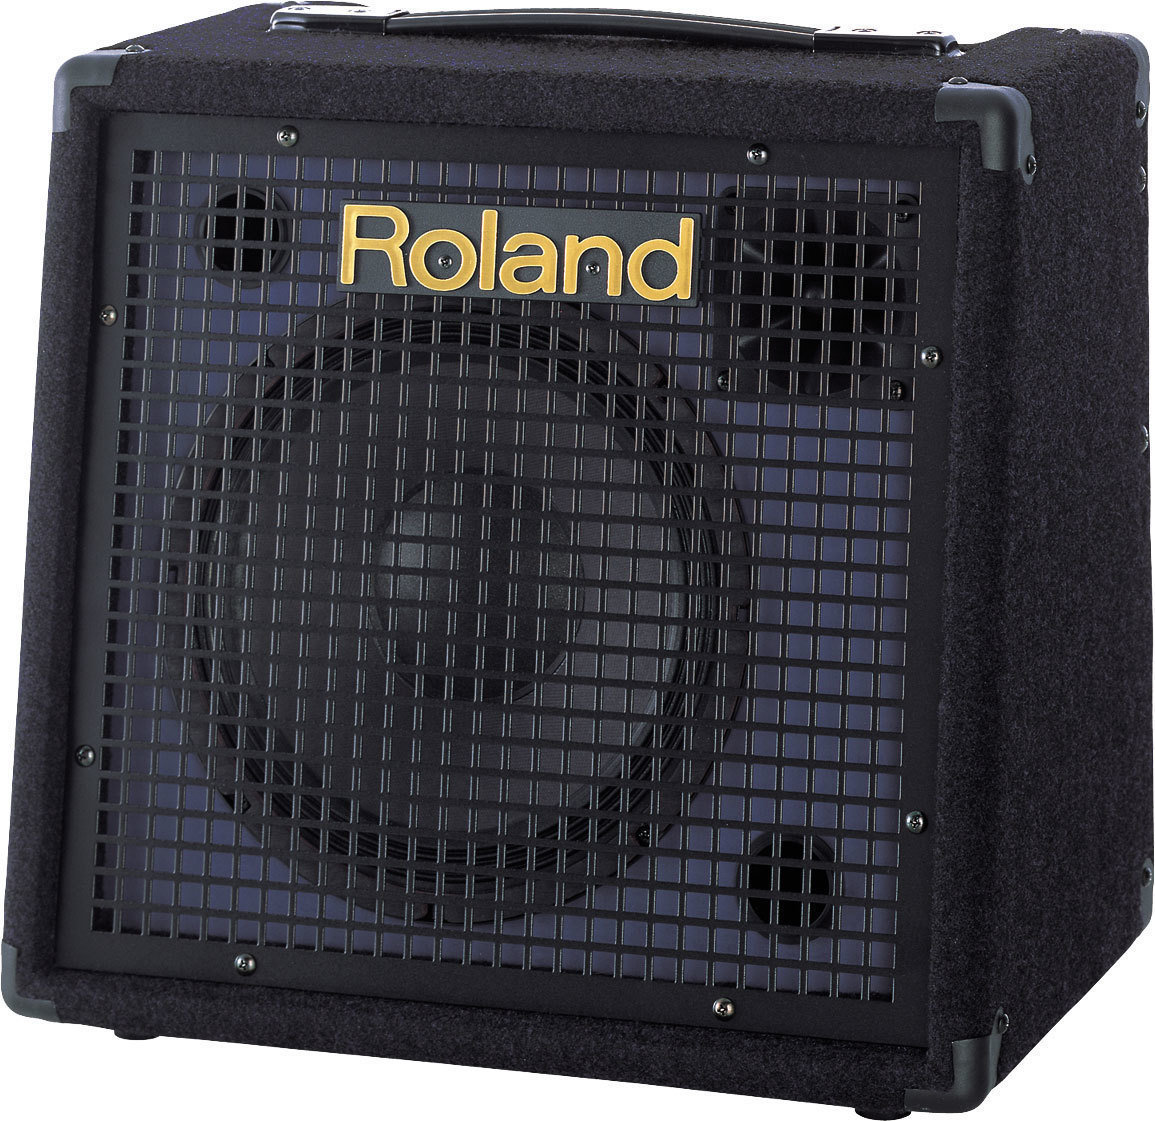 Geluidssysteem voor keyboard Roland KC-60